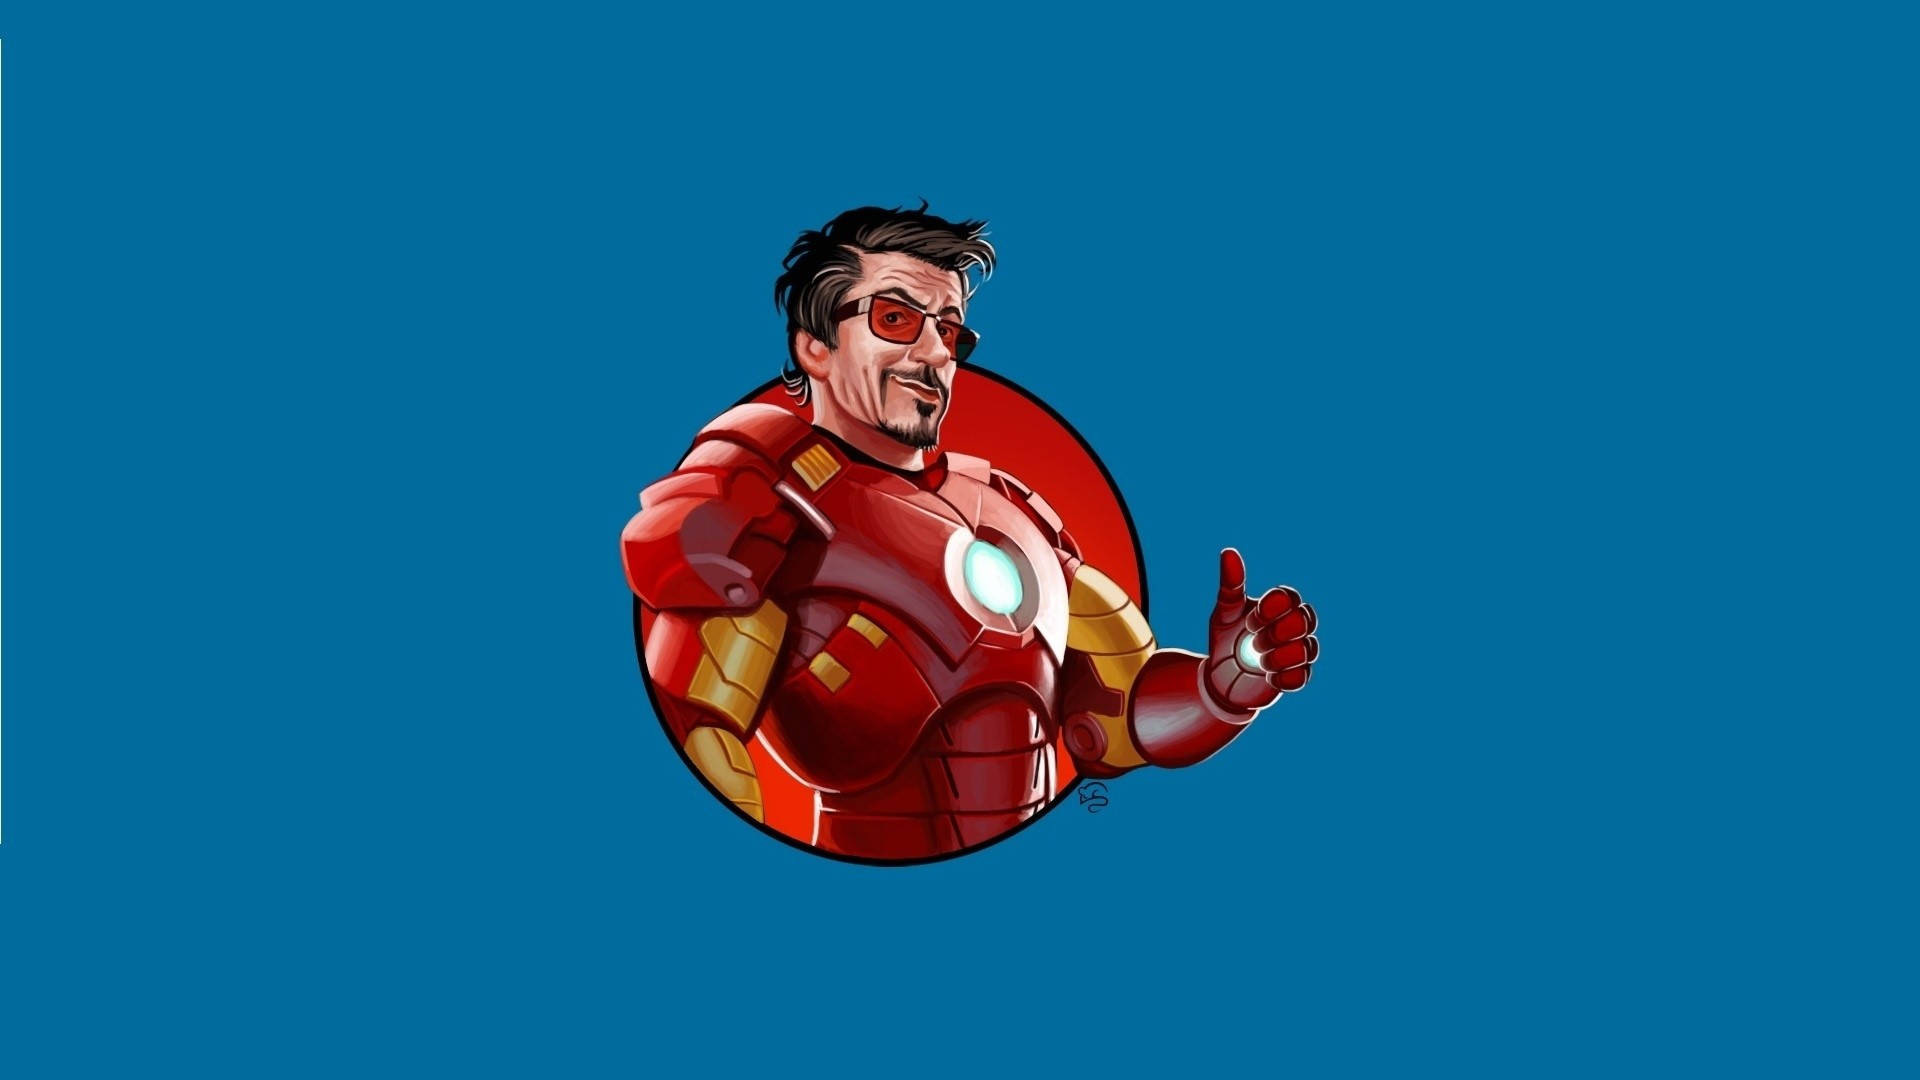 Free Iron Man Logo Wallpaper Downloads, [100+] Iron Man Logo Wallpapers for  FREE 